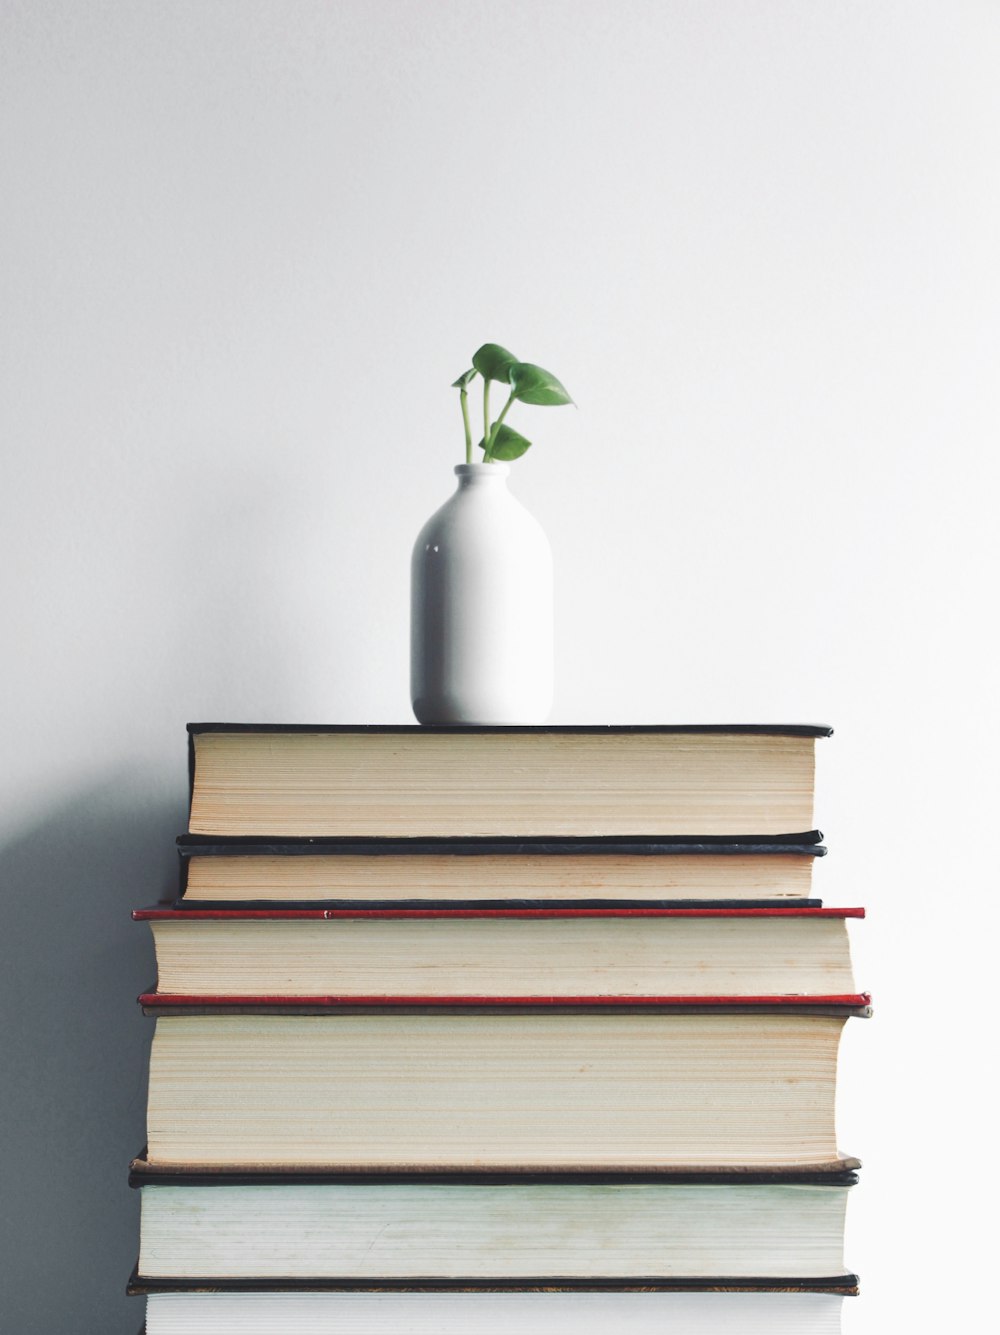 Vase en céramique blanche avec plante verte sur le dessus des livres